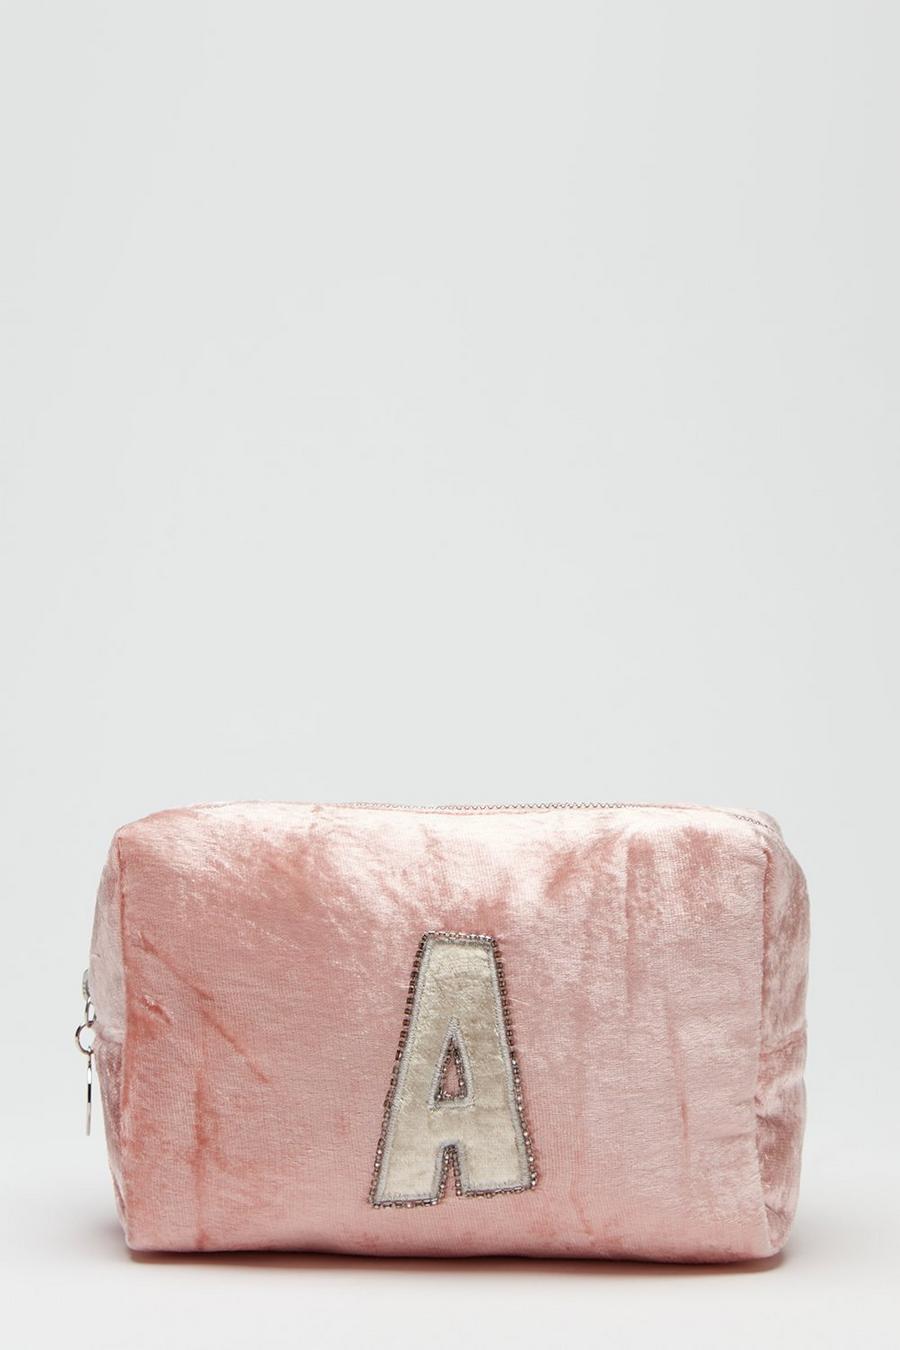 Alphabet Initial 'A' Makeup Bag